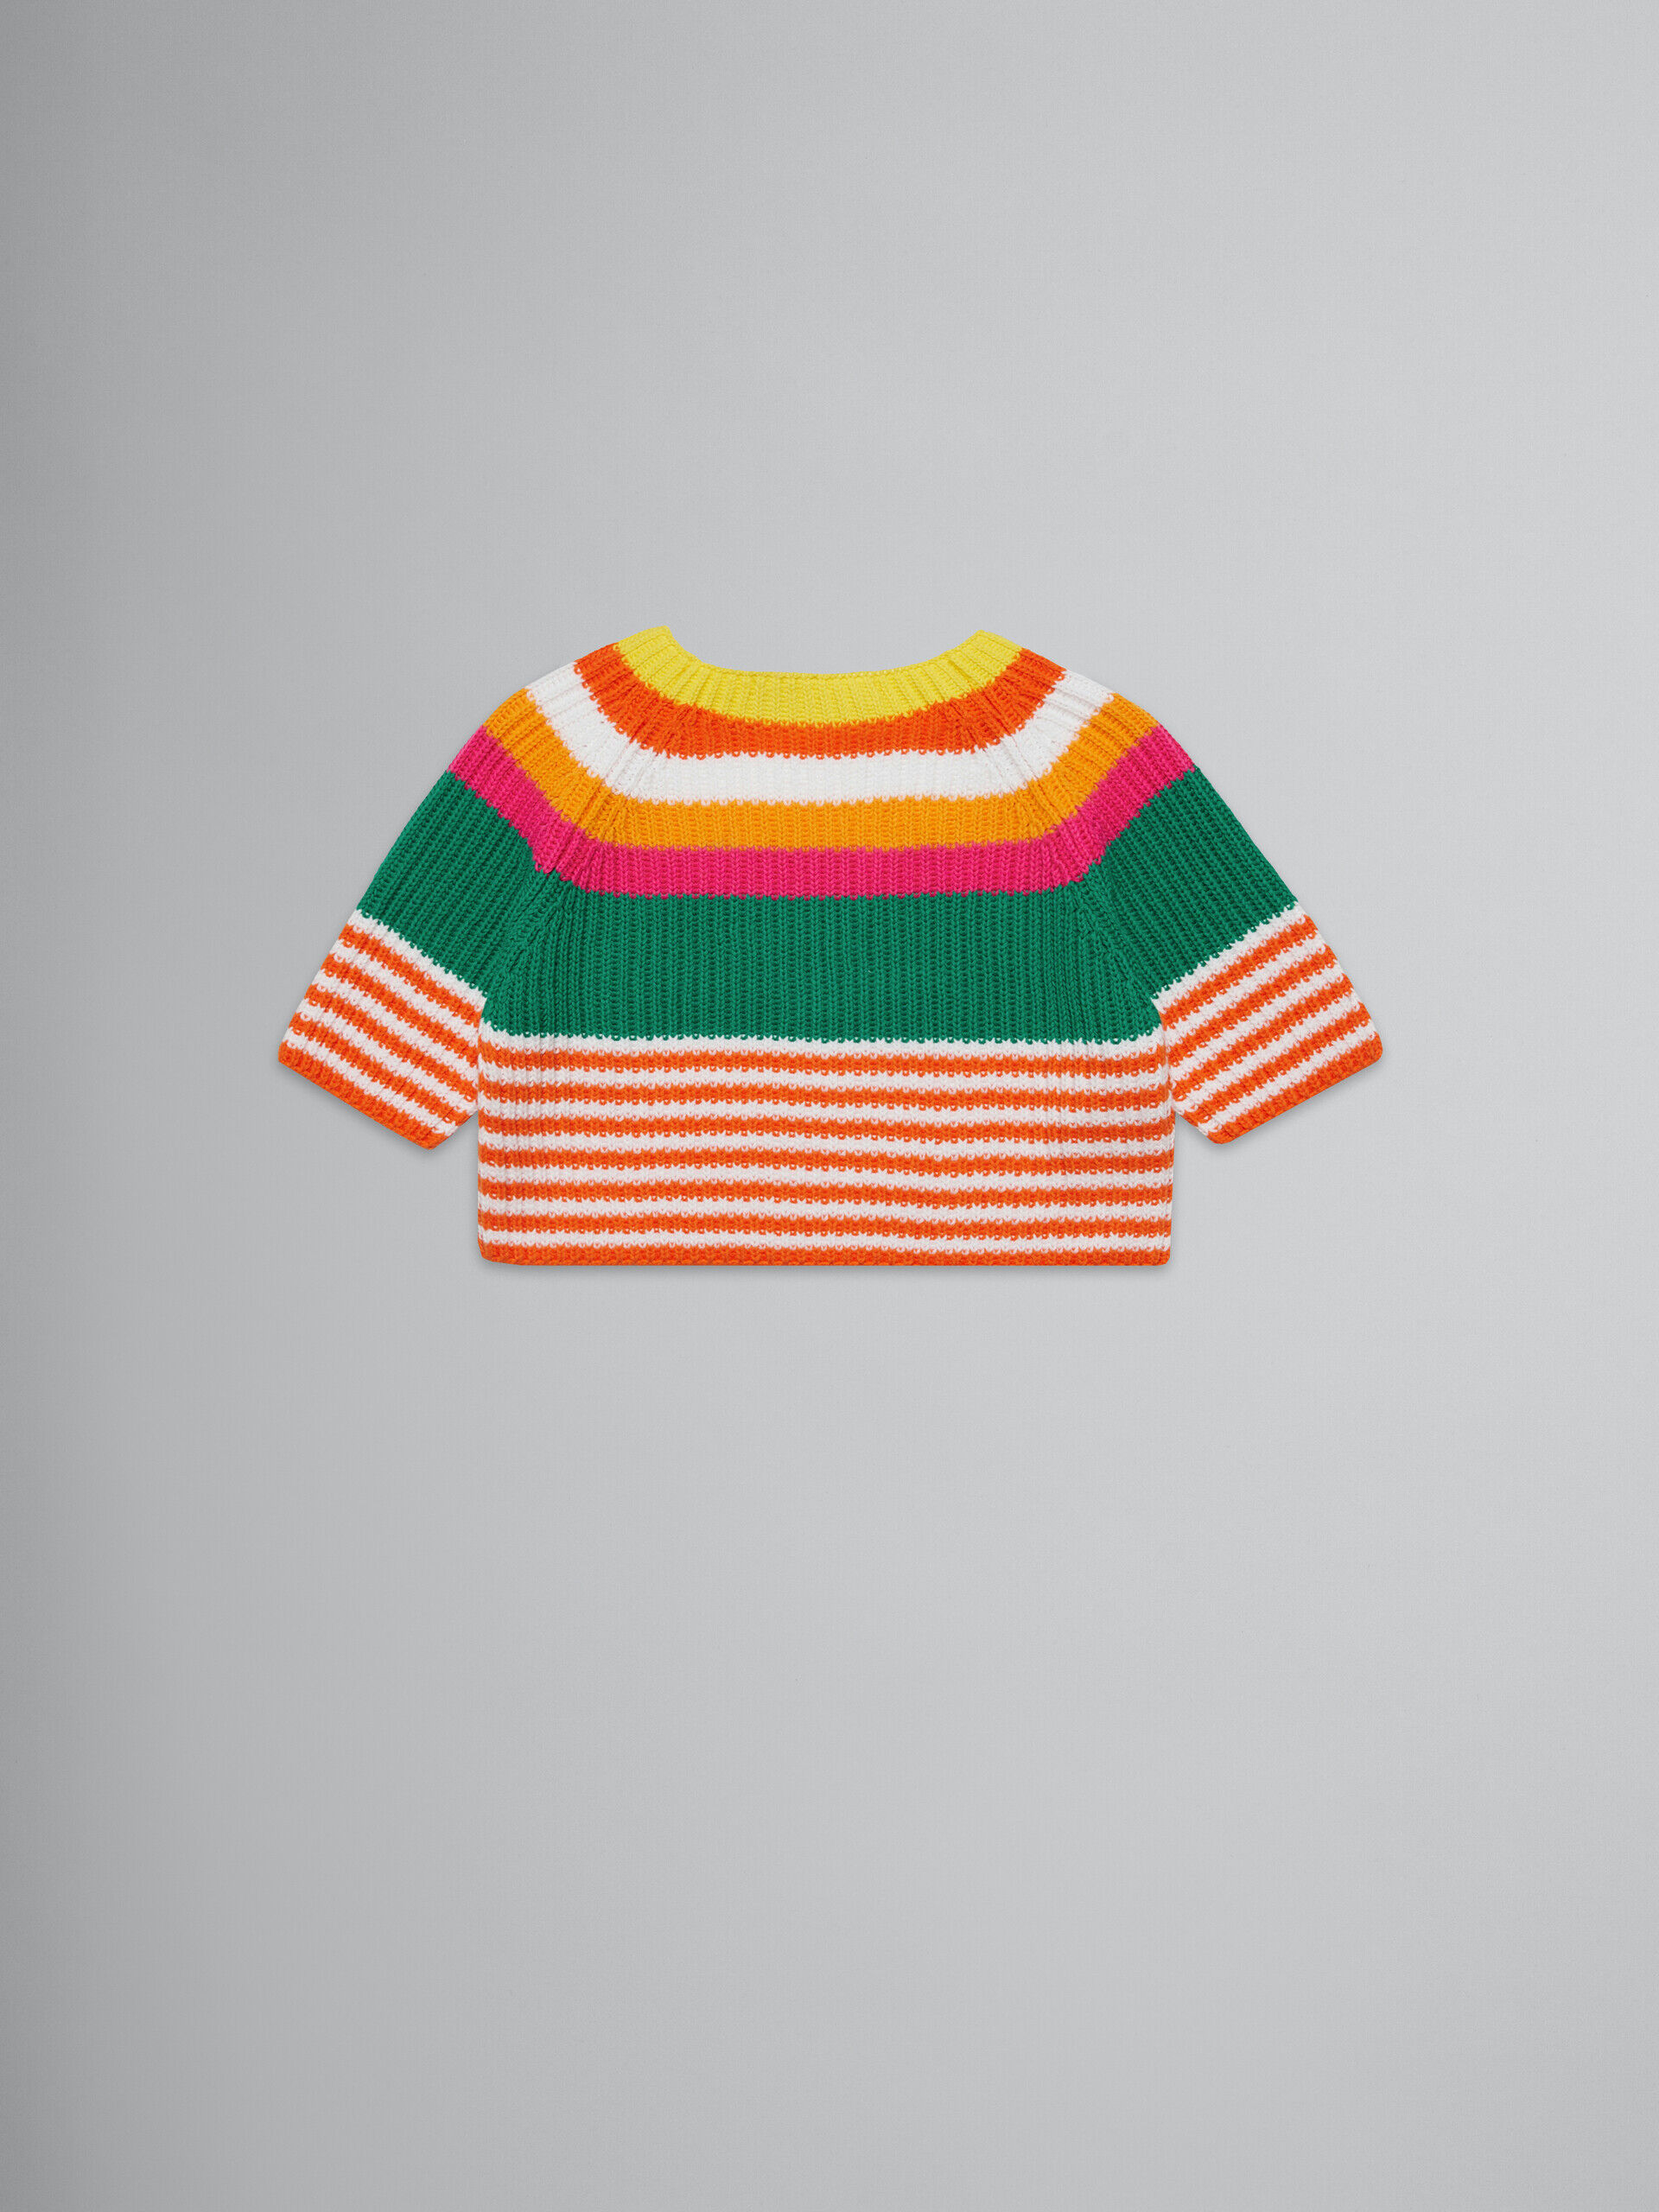 Multicolor striped knit pullover | Marni